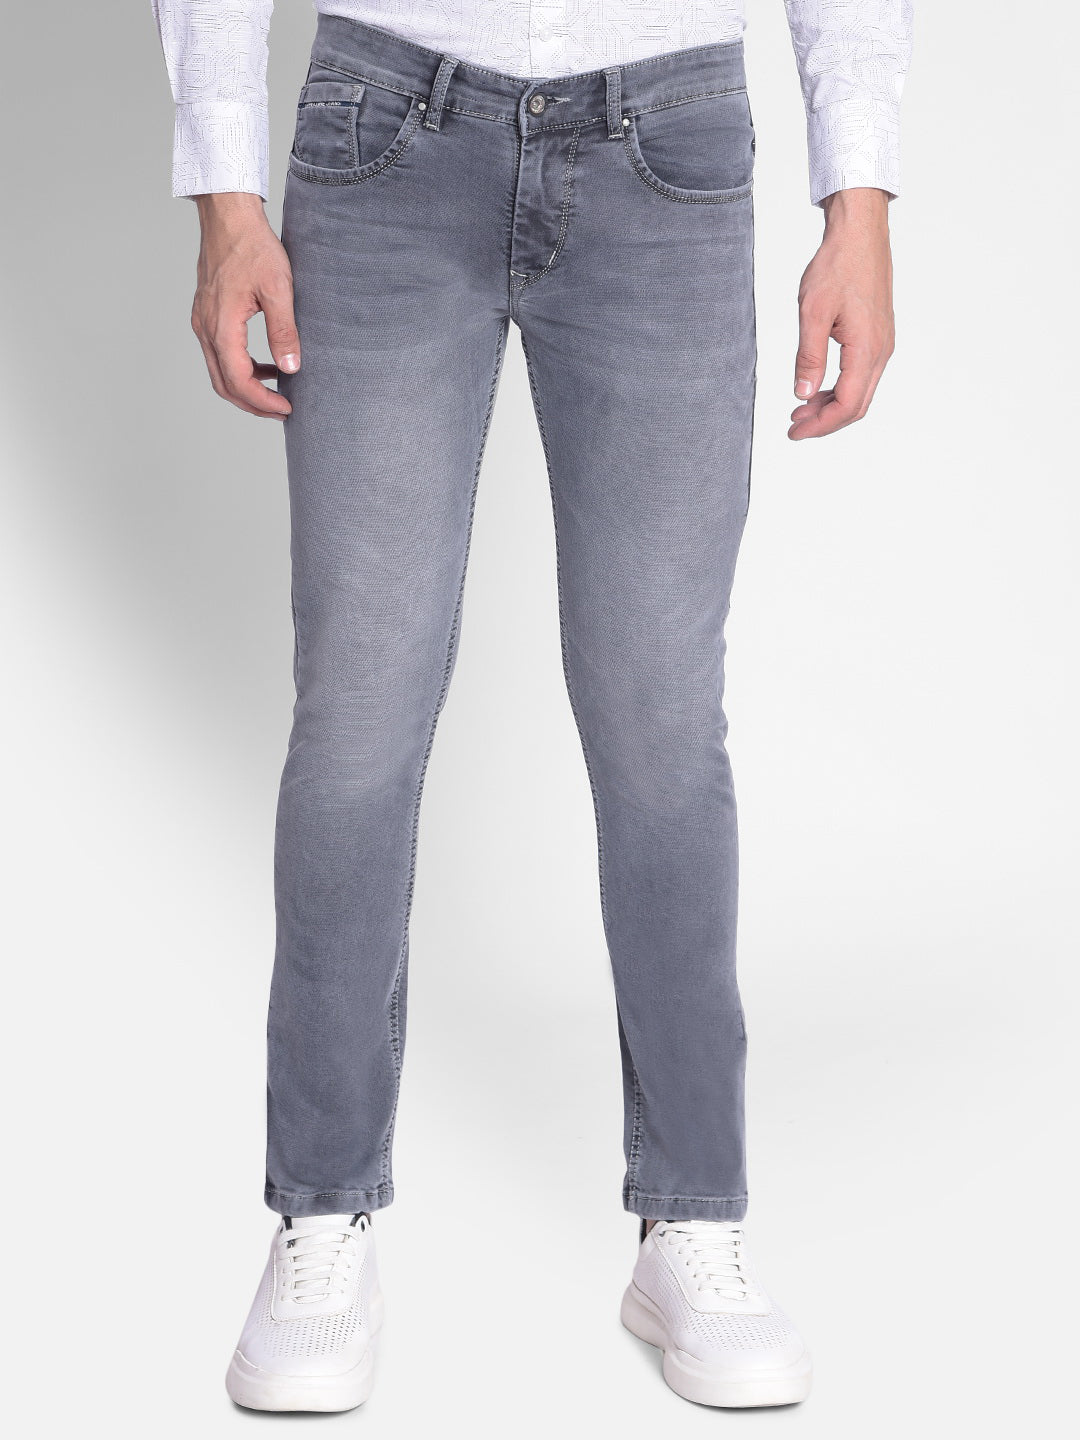 Grey Jeans-Men Jeans-Crimsoune Club